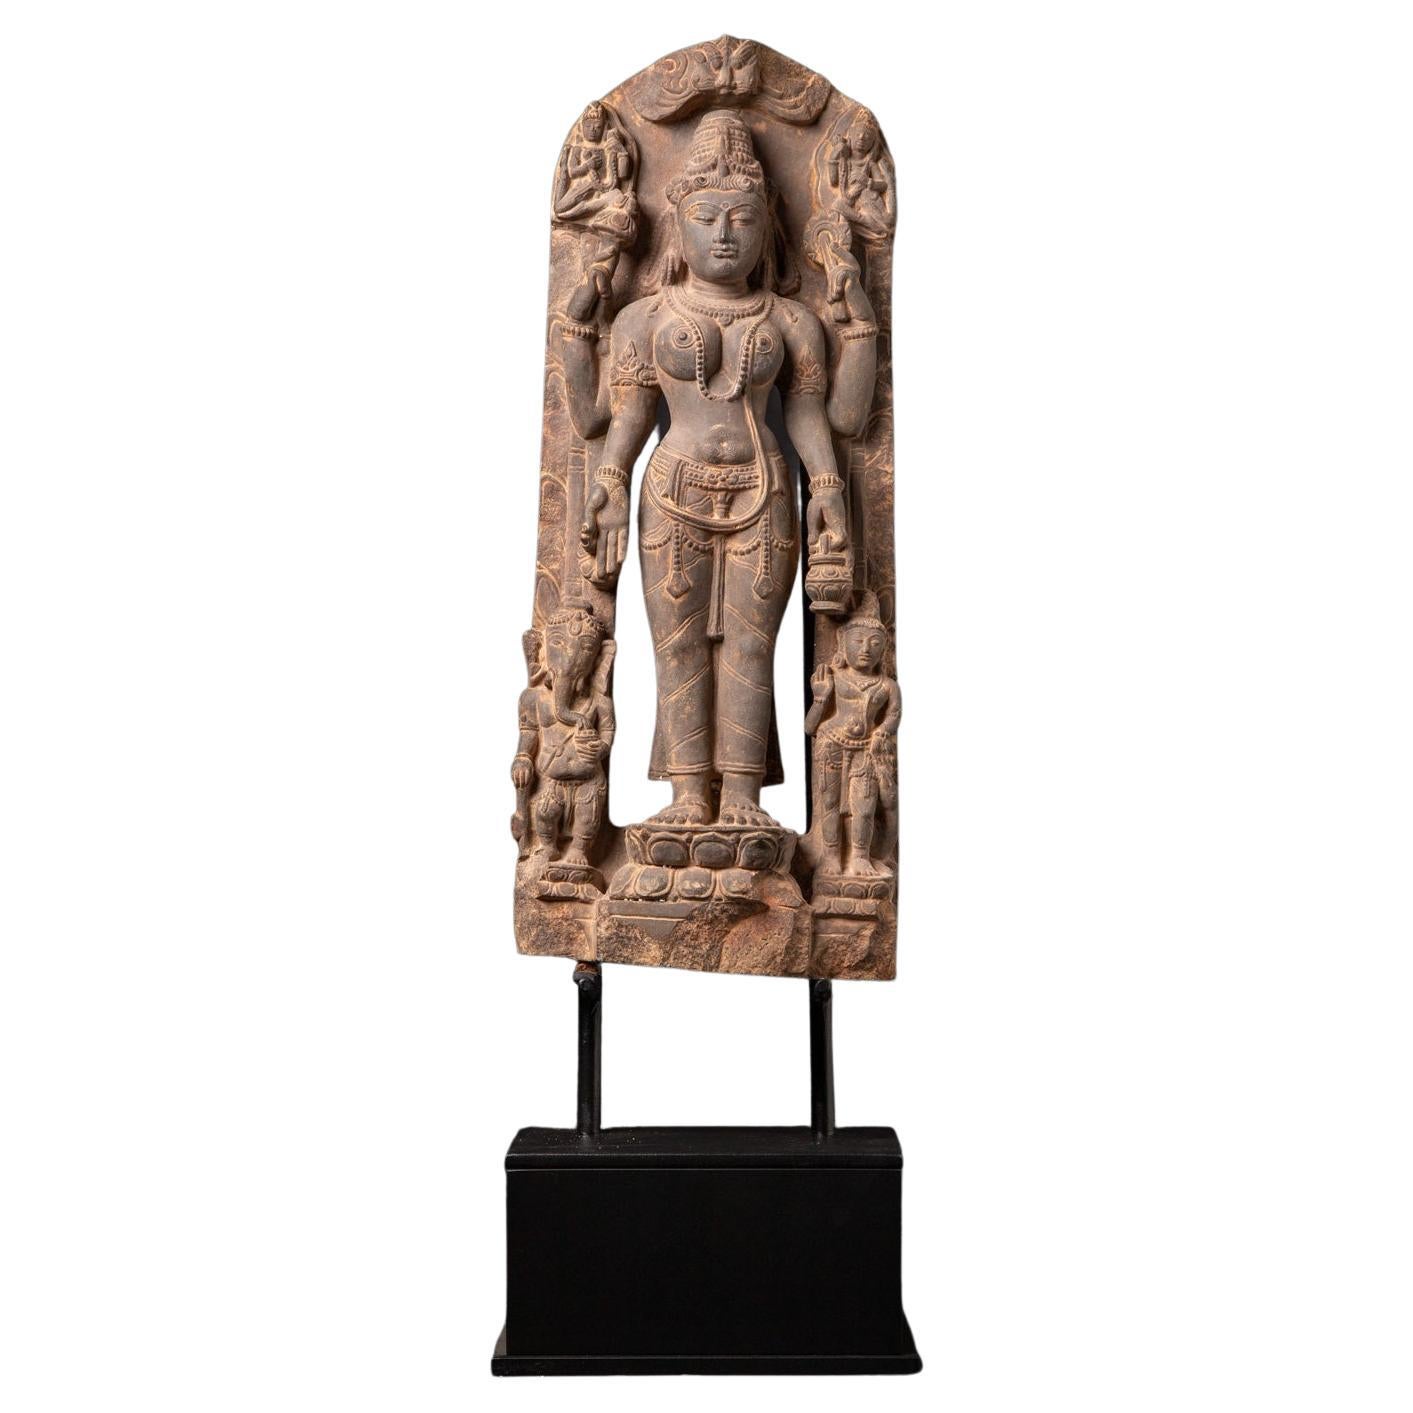 19th century sandstone statue of Saraswati with Ganesha and Kartikeya from India